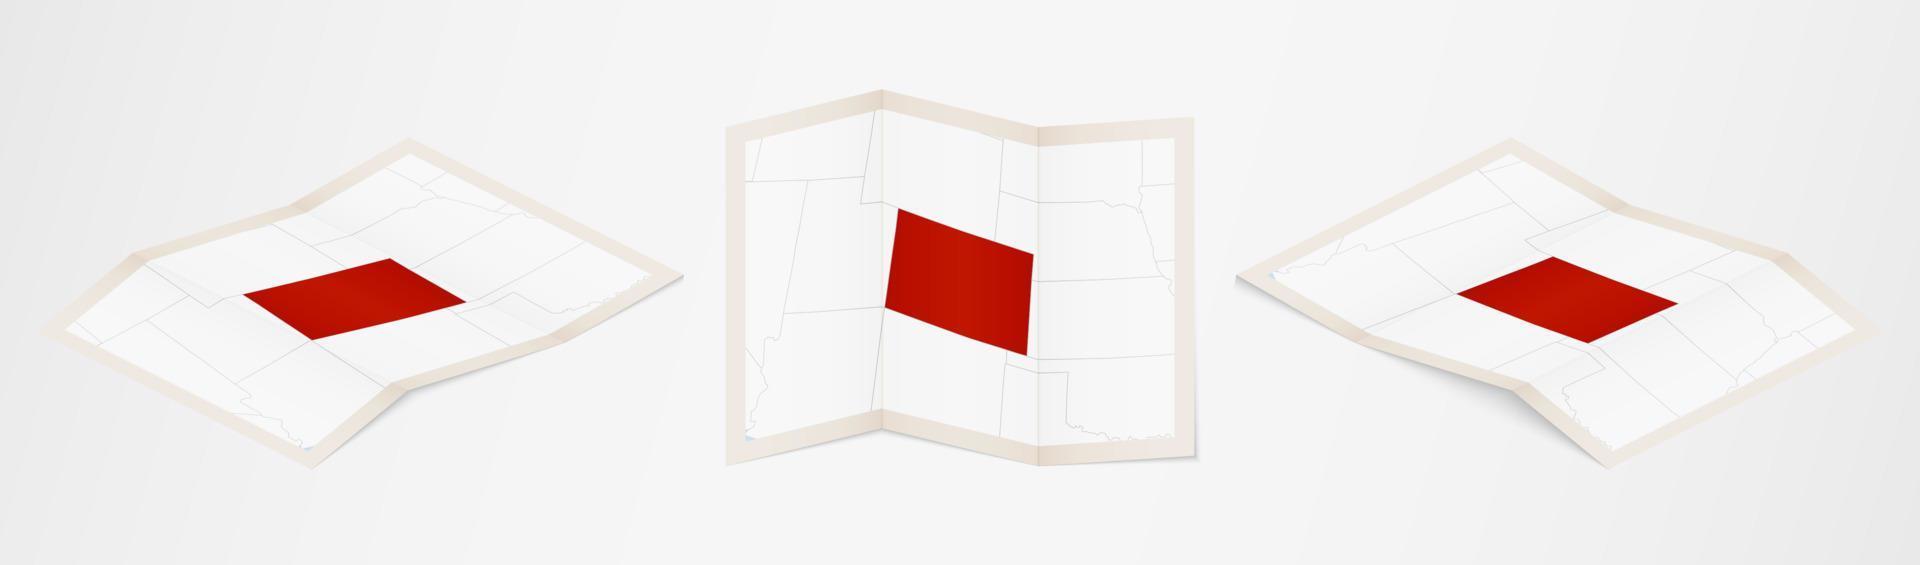 Faltkarte von Colorado in drei verschiedenen Versionen. vektor